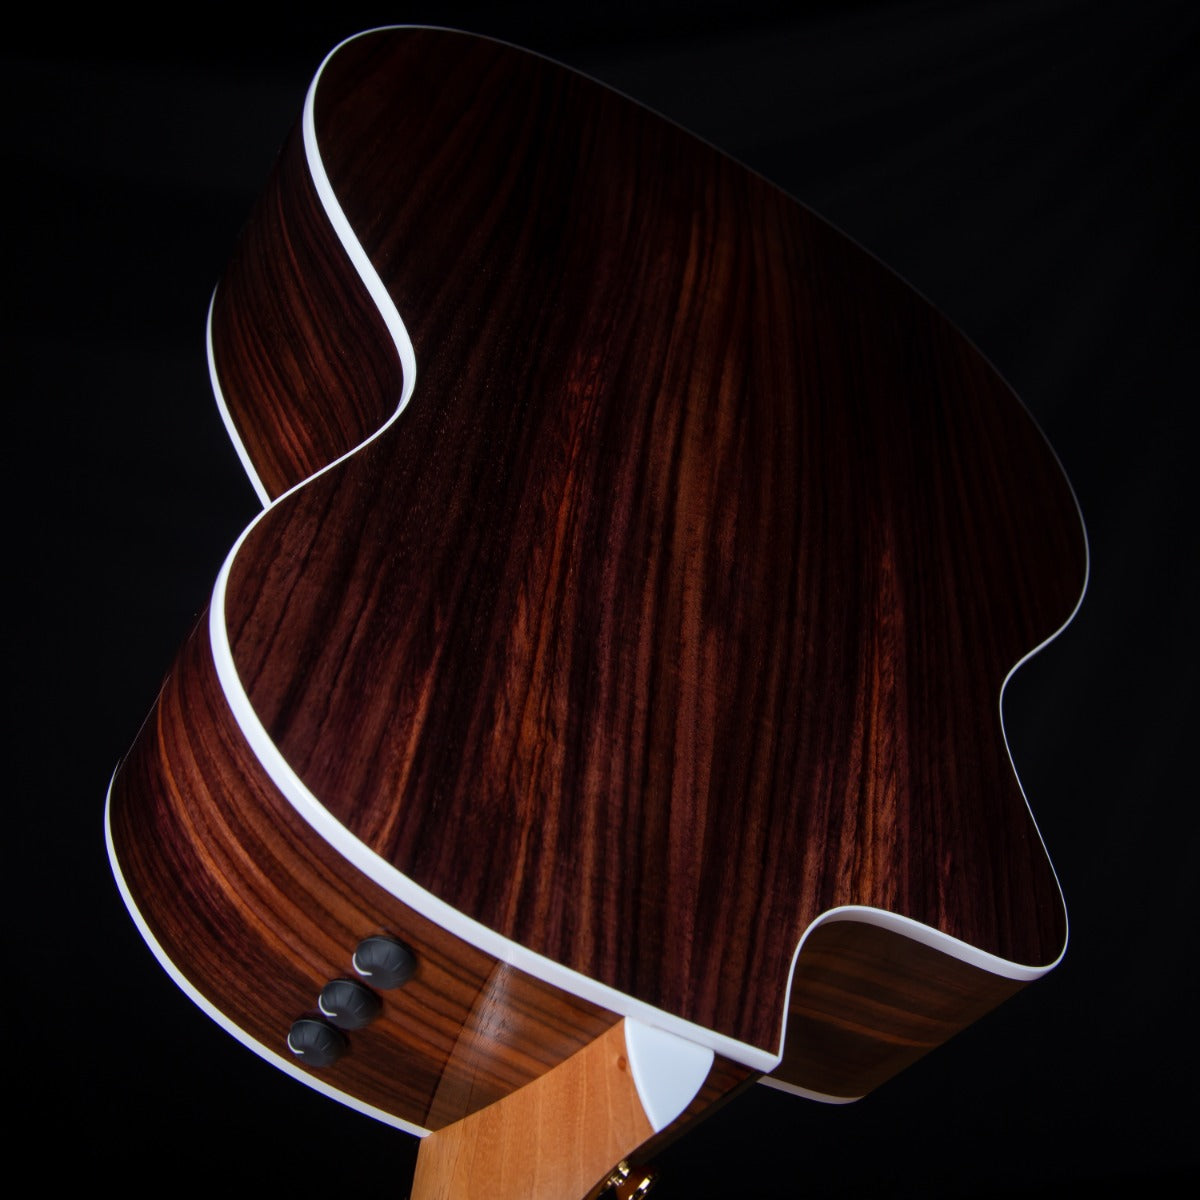 Taylor 214ce DLX Acoustic-Electric Guitar view 13